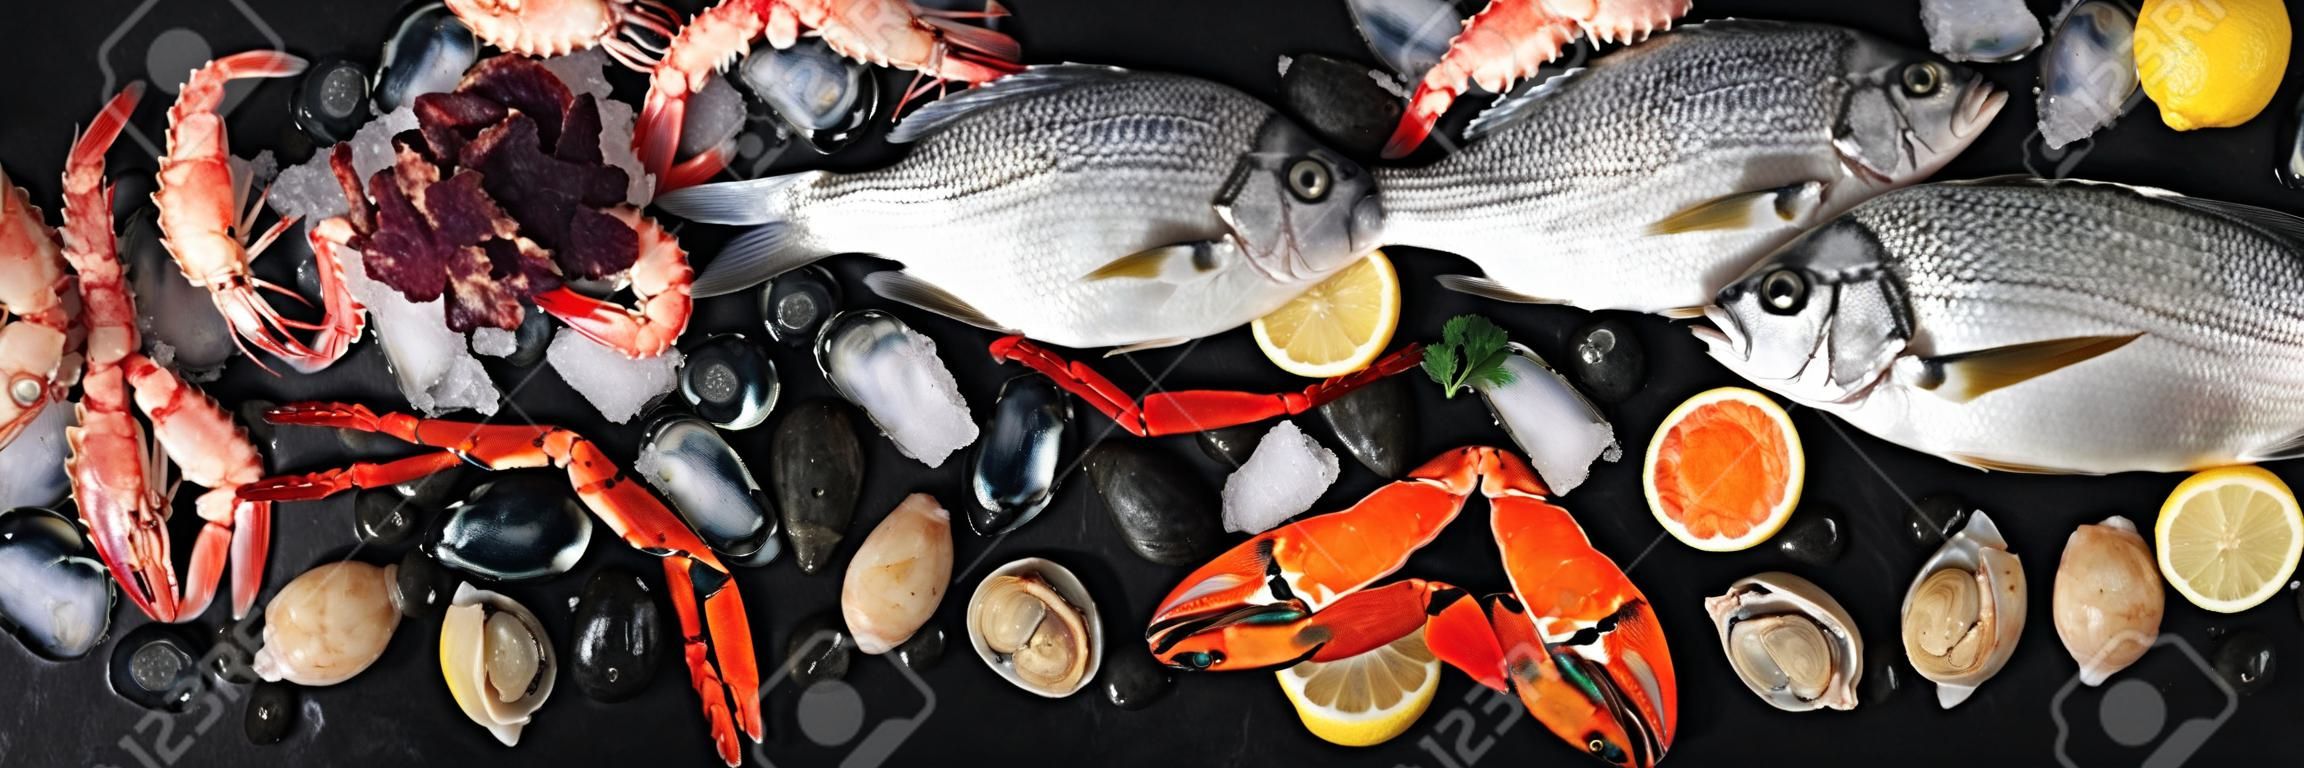 Panorama ryb i owoców morza, płaskie ujęcie z góry. Dorada. krewetki, kraby, sardynki, kalmary, ośmiornice i przegrzebki na lodzie z cytryną i kawiorem